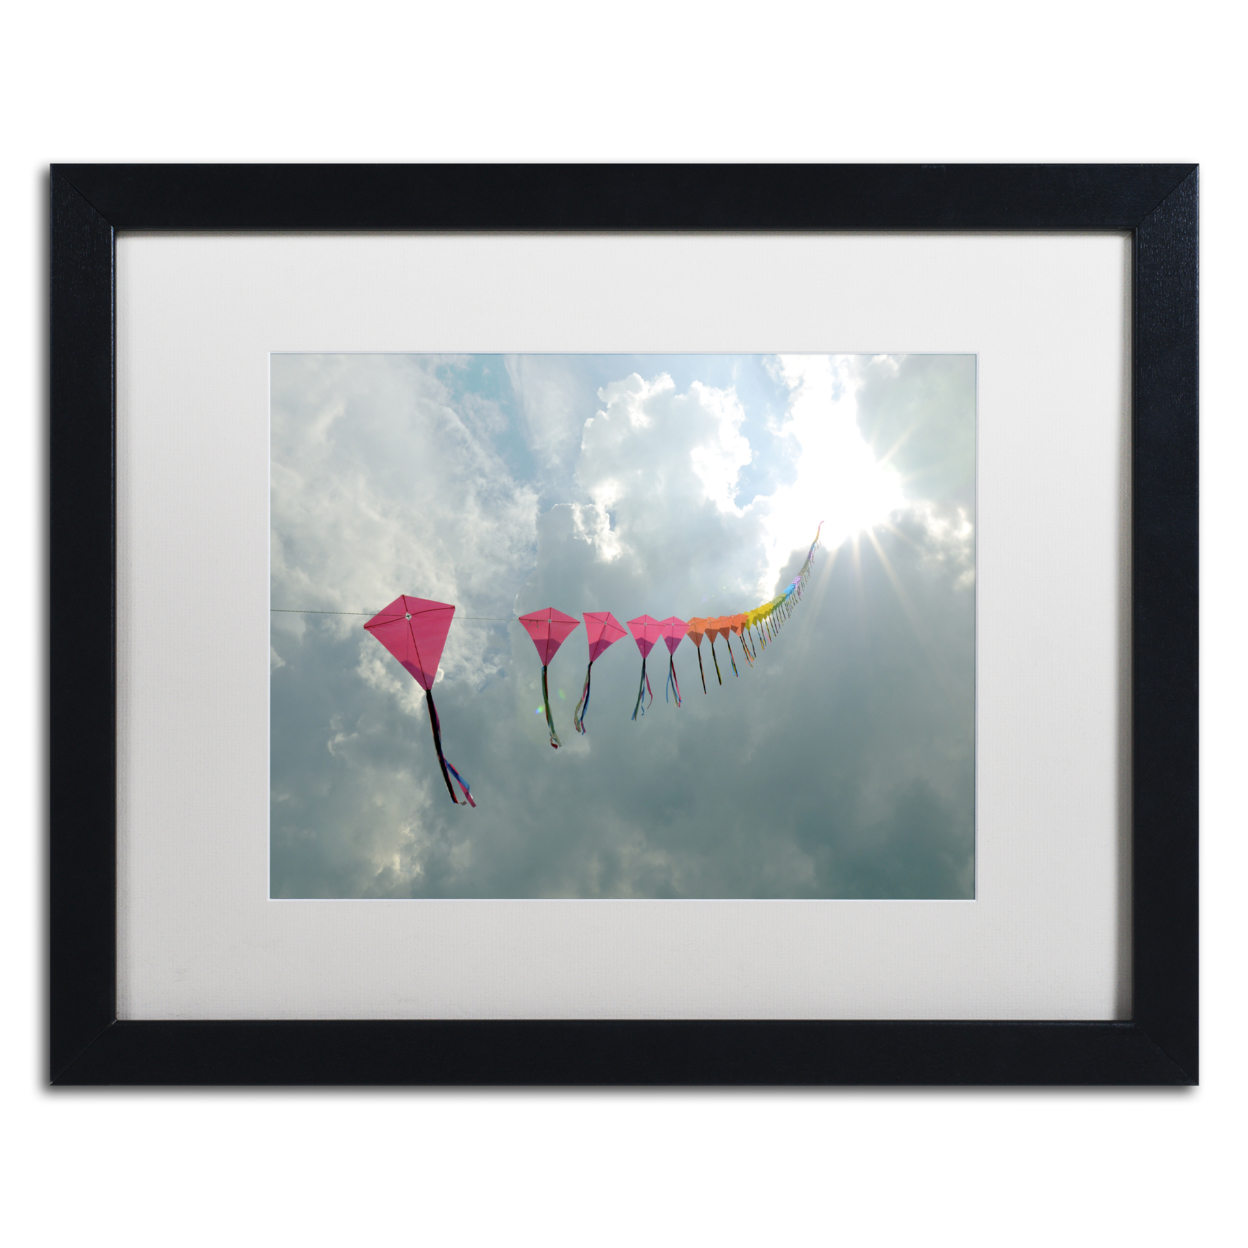 Kurt Shaffer 'Kites To Heaven' Black Wooden Framed Art 18 X 22 Inches